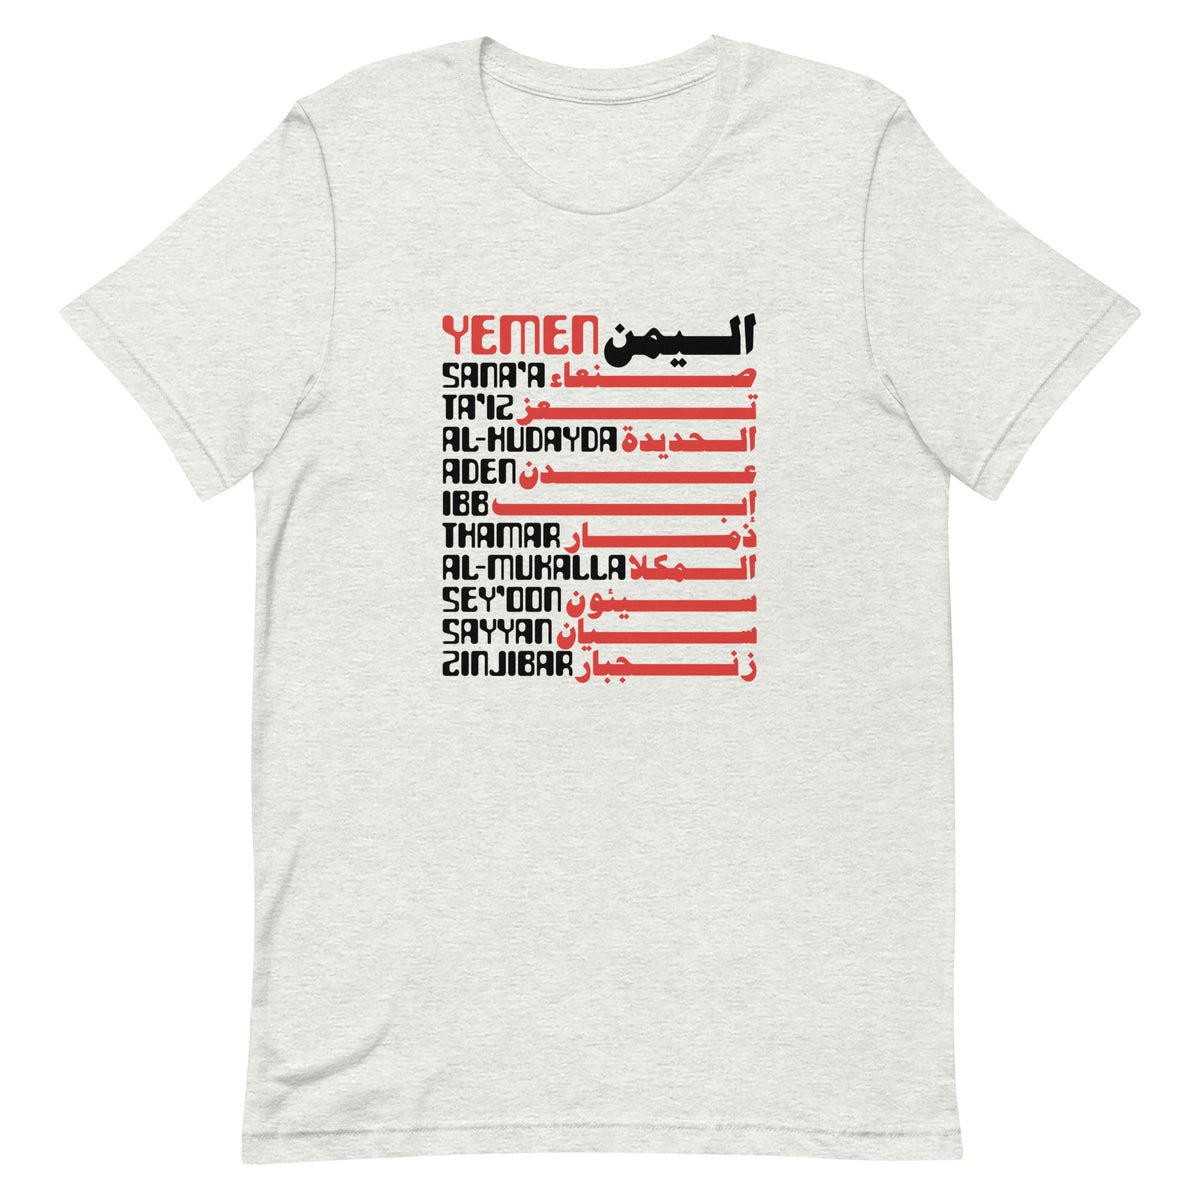 Cities of Yemen - T shirt